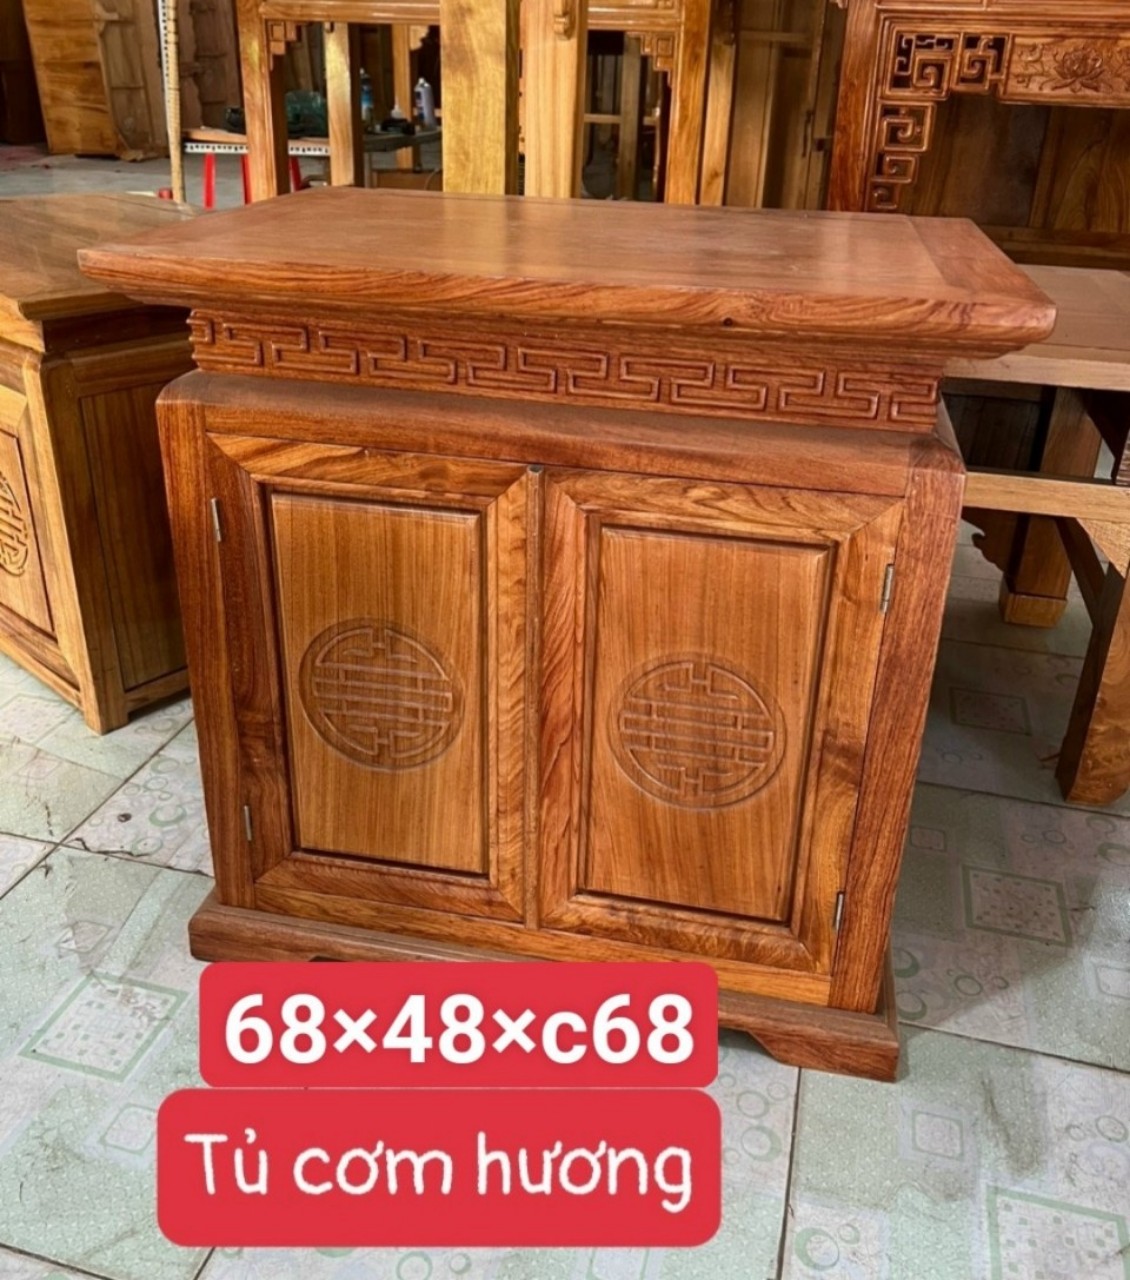 Tủ cơm cúng bàn con gỗ hương cao cấp kích thước 68x48xc68 cm